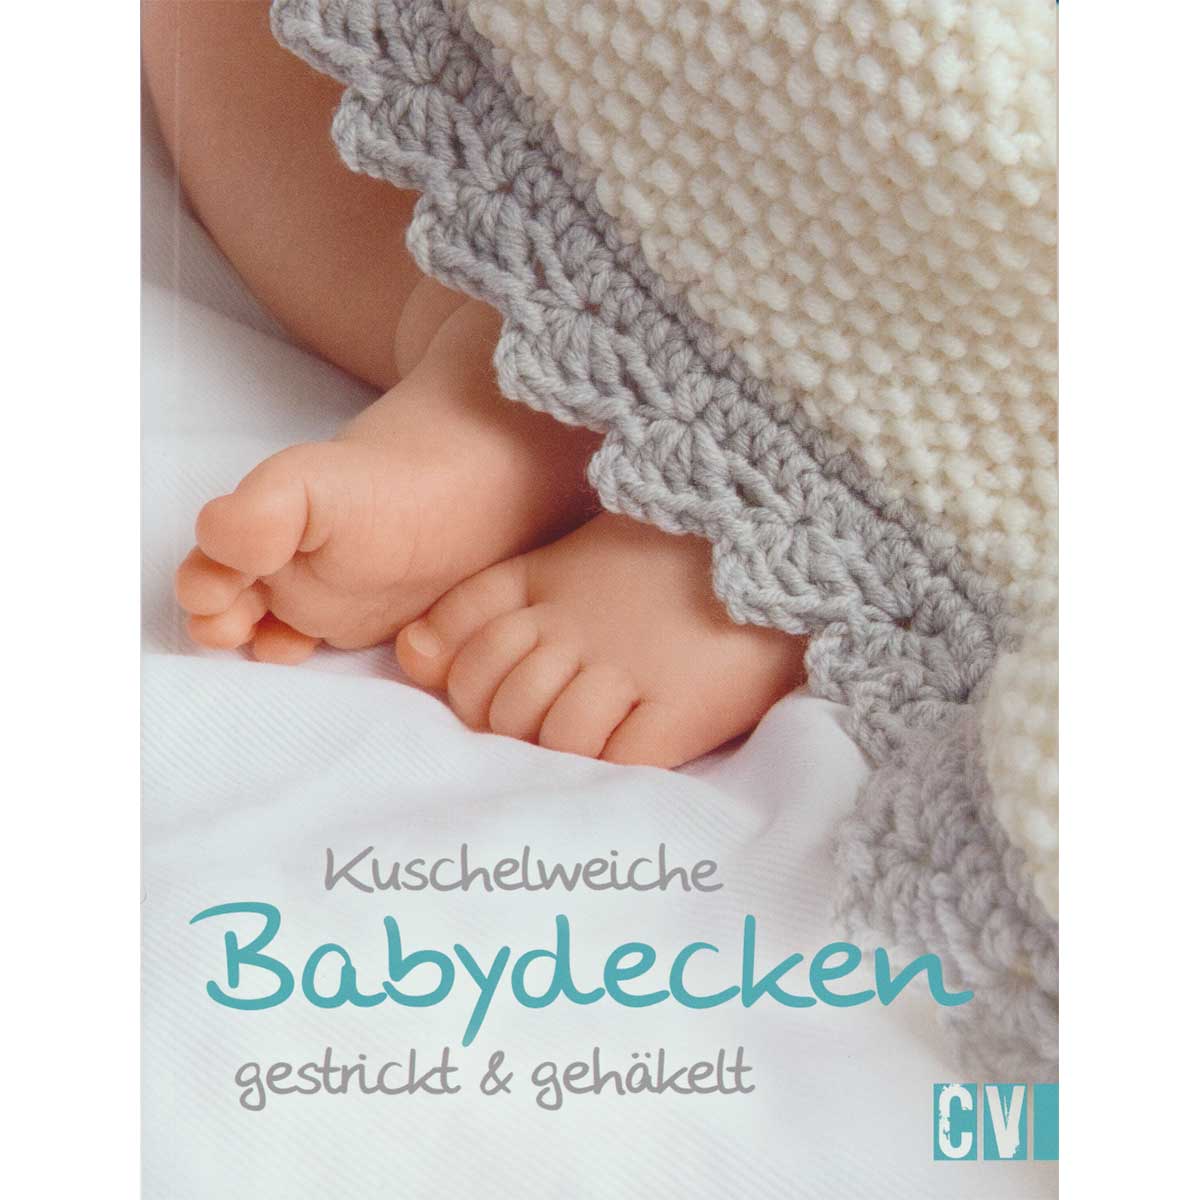 Kuschelweiche Babydecken  (CV 6420)